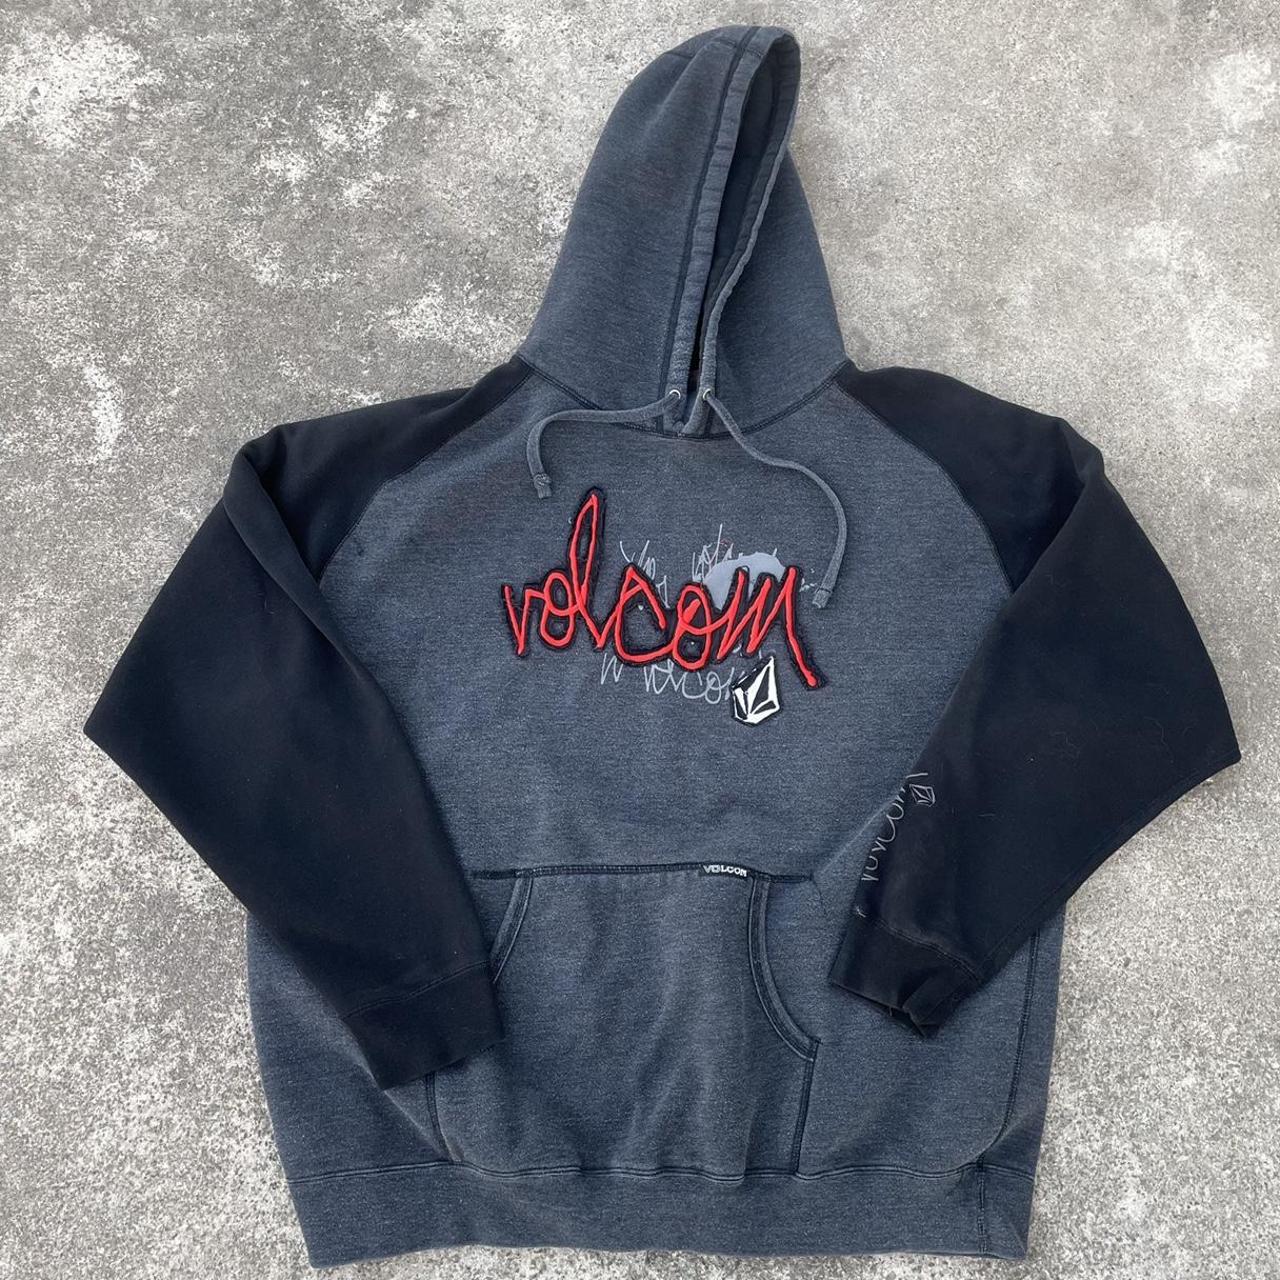 Y2k Volcom hoodie, dark grey and black pullover with... - Depop